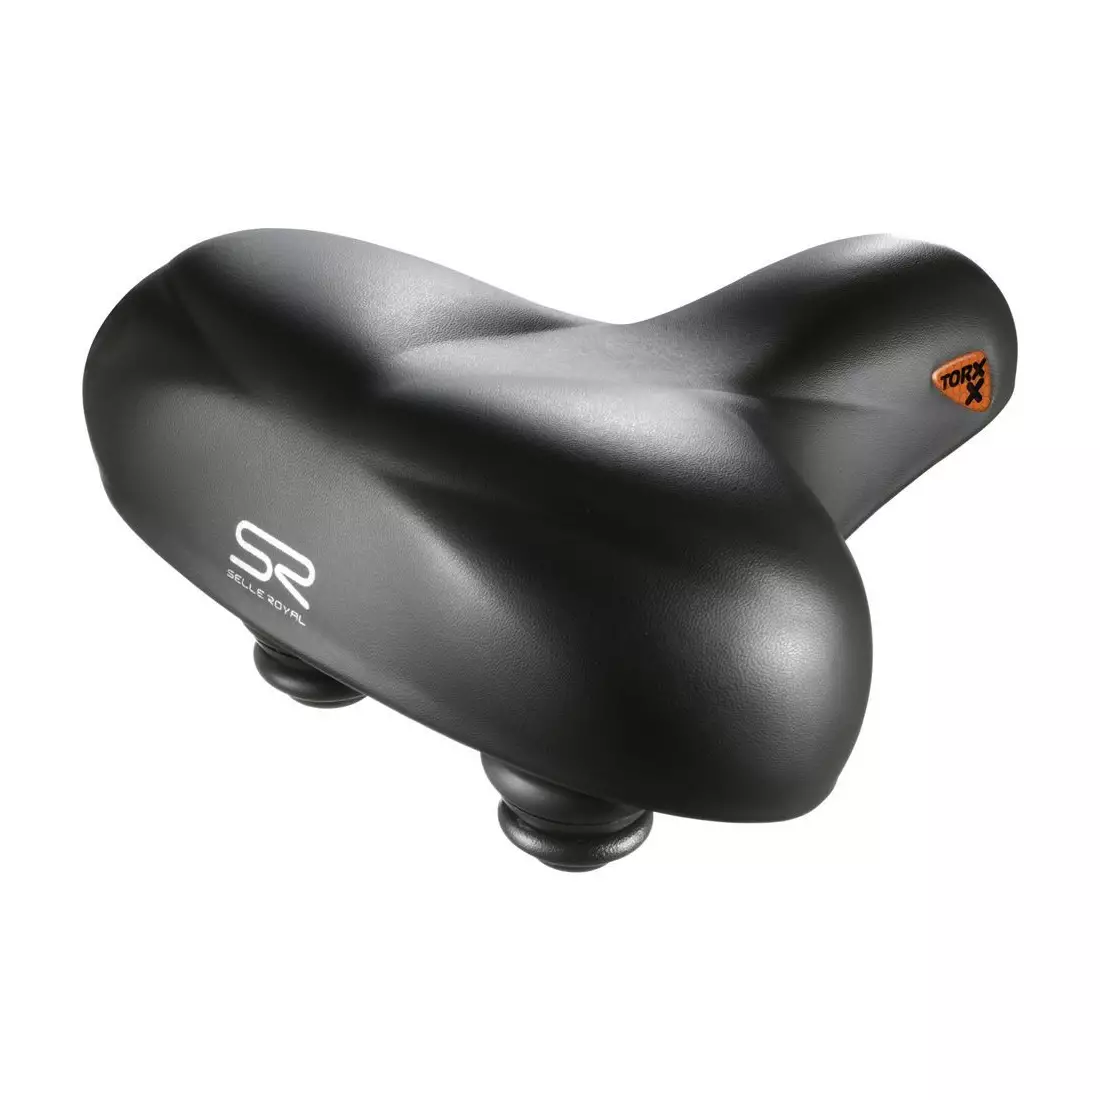 SELLEROYAL sedlo bicykla  premium relaxed torx gél + elastoméry SR-5199UECA55301